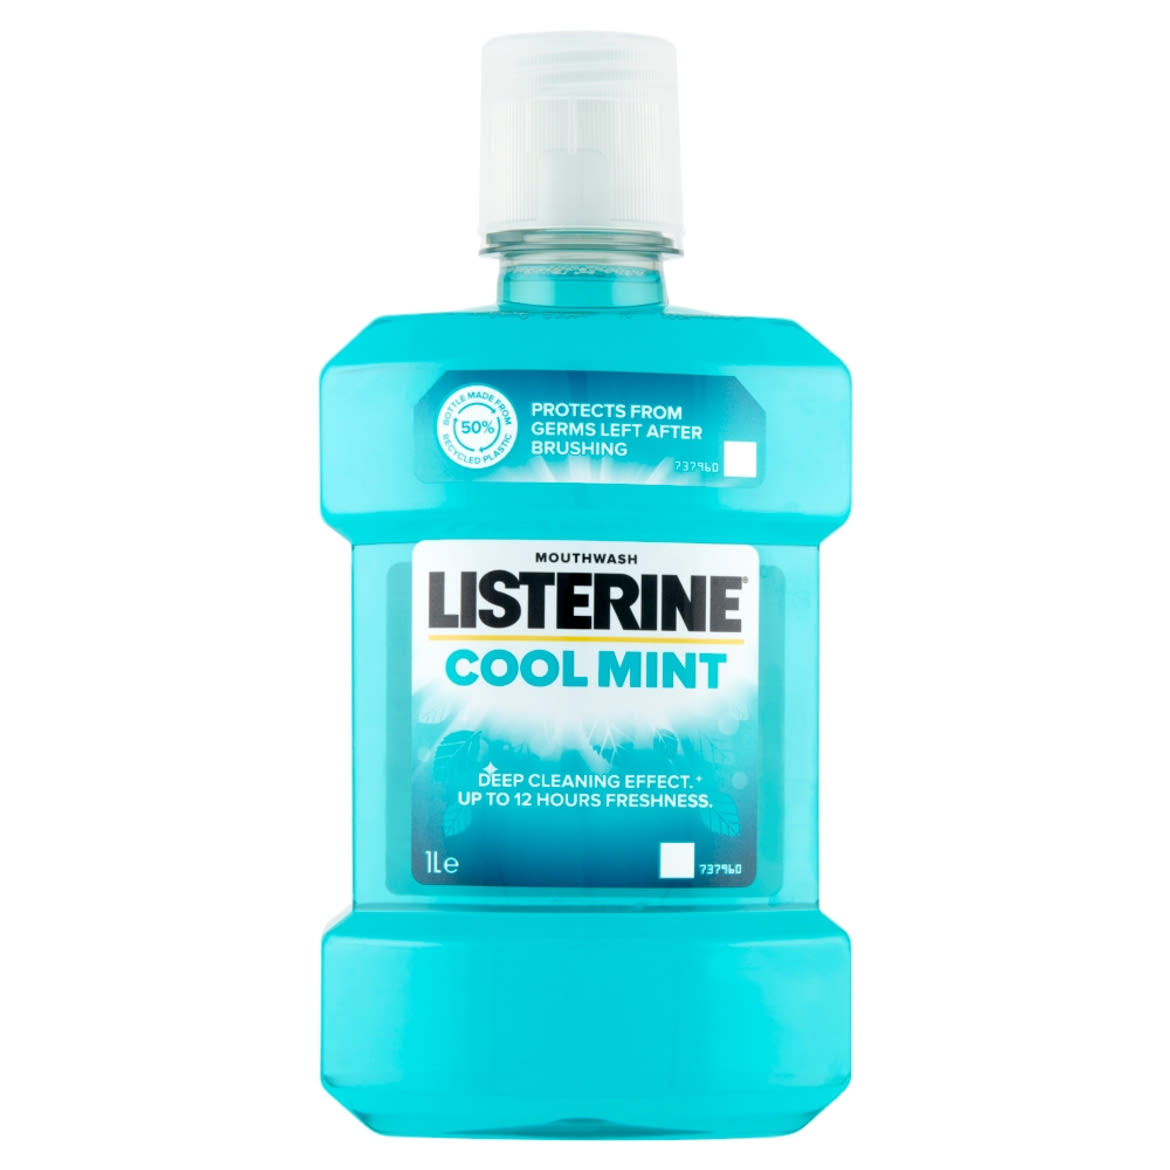 Listerine Cool Mint szájvíz